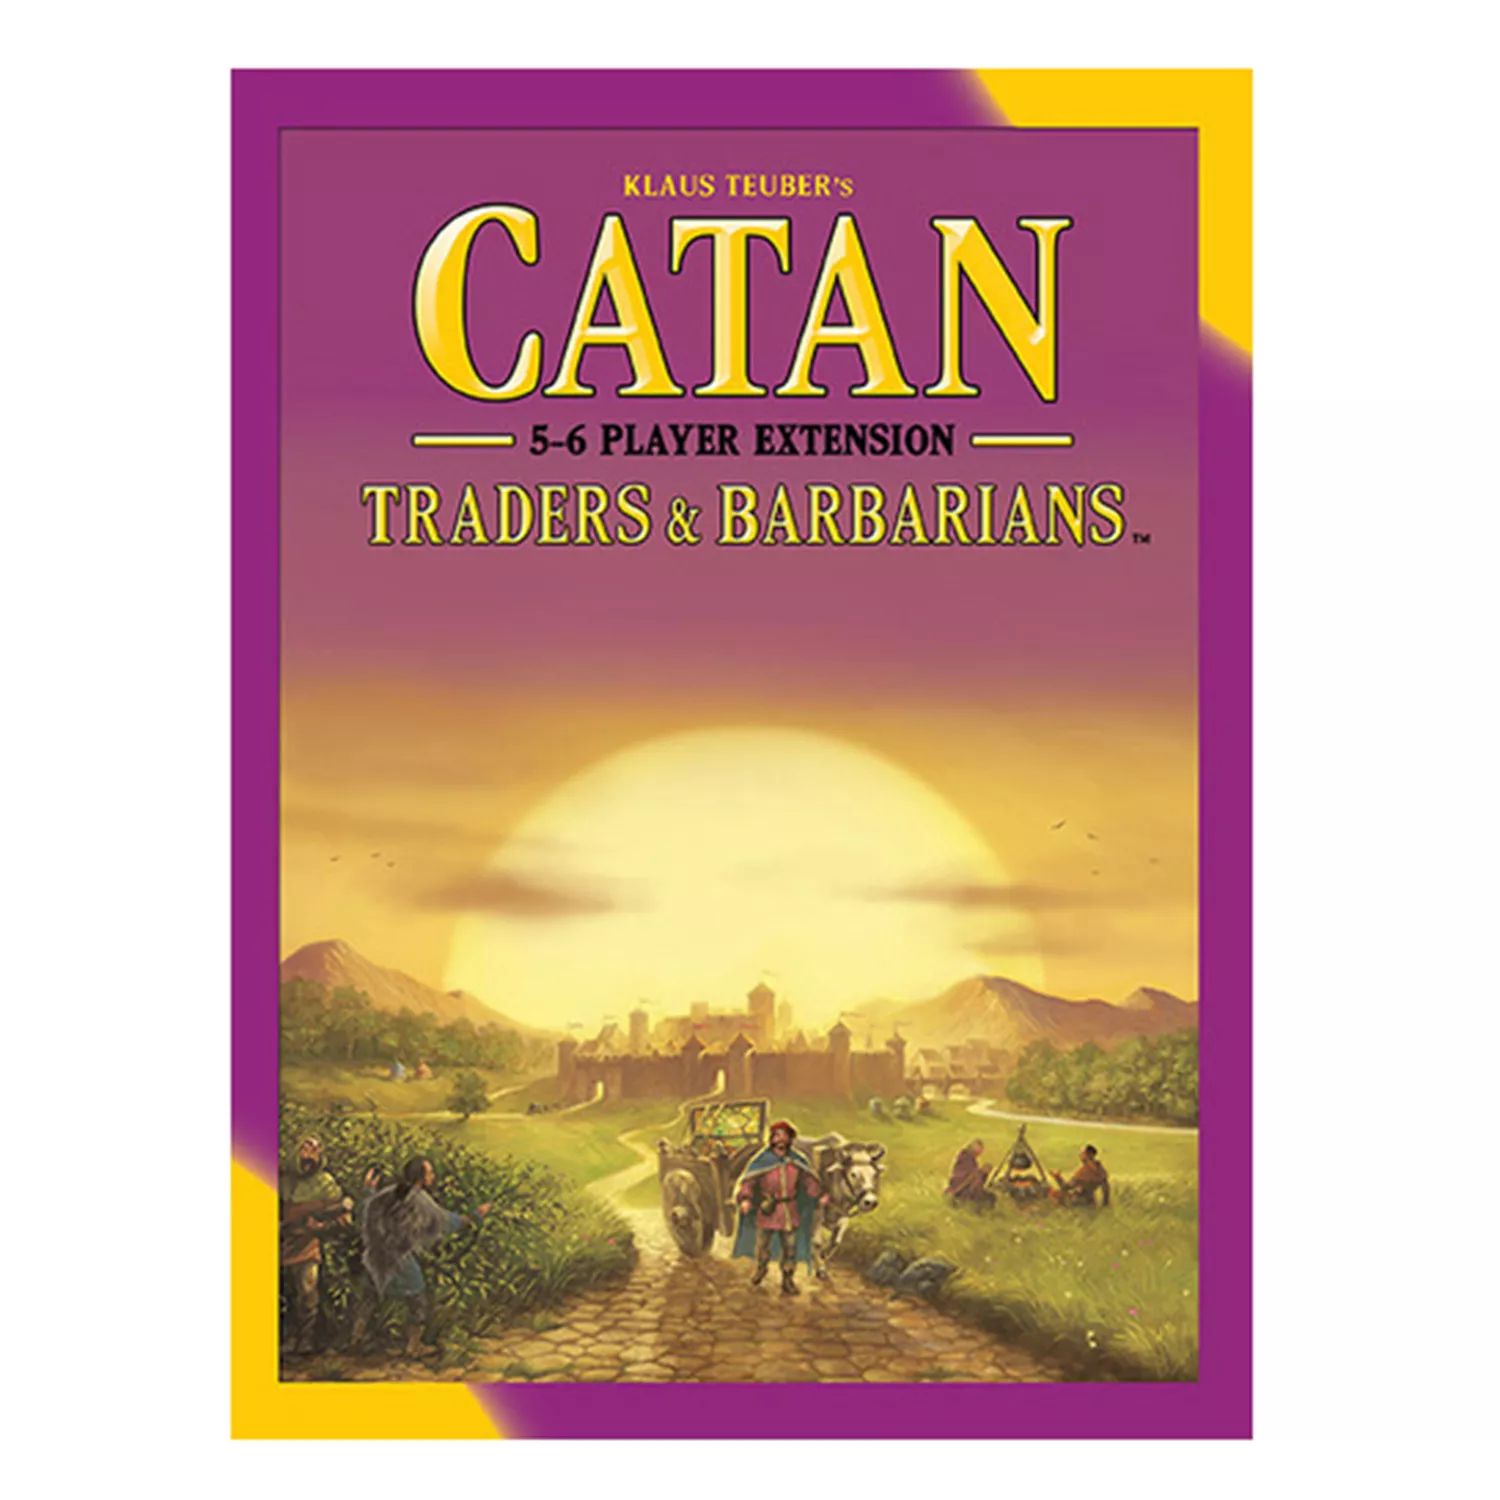 Расширение Catan: Traders & Barbarians для 5-6 игроков от Mayfair Games Mayfair Games